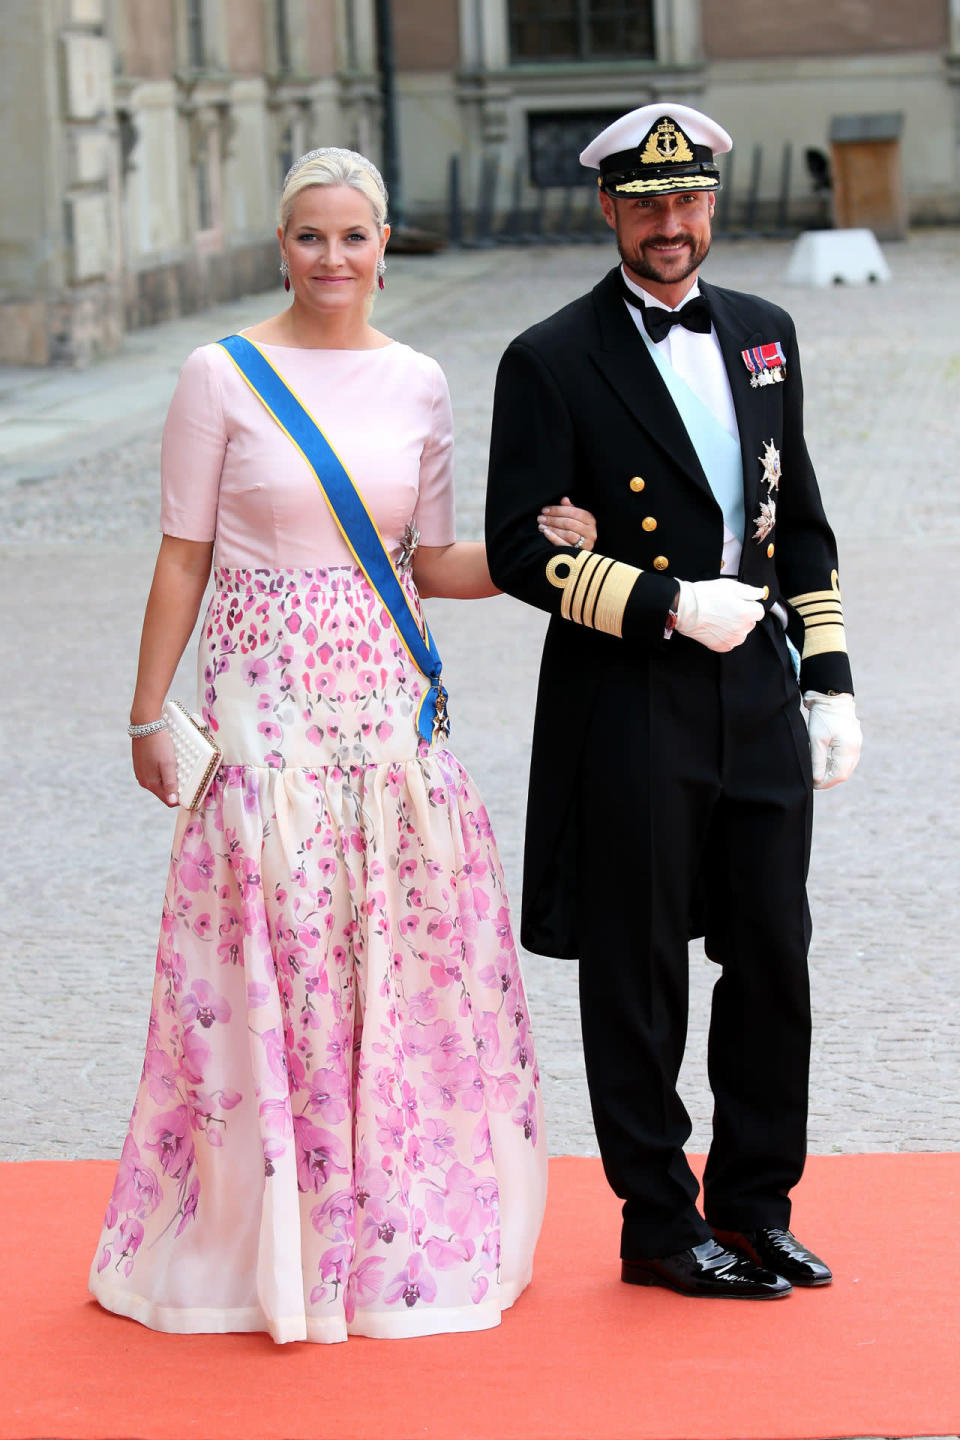 Mette-Marit de Noruega completa la lista de las royals mejor vestidas del año. “Discreto”, así han calificado su estilo los expertos de dicha publicación. (Foto: Gisela Schober / German Select / Getty Images).